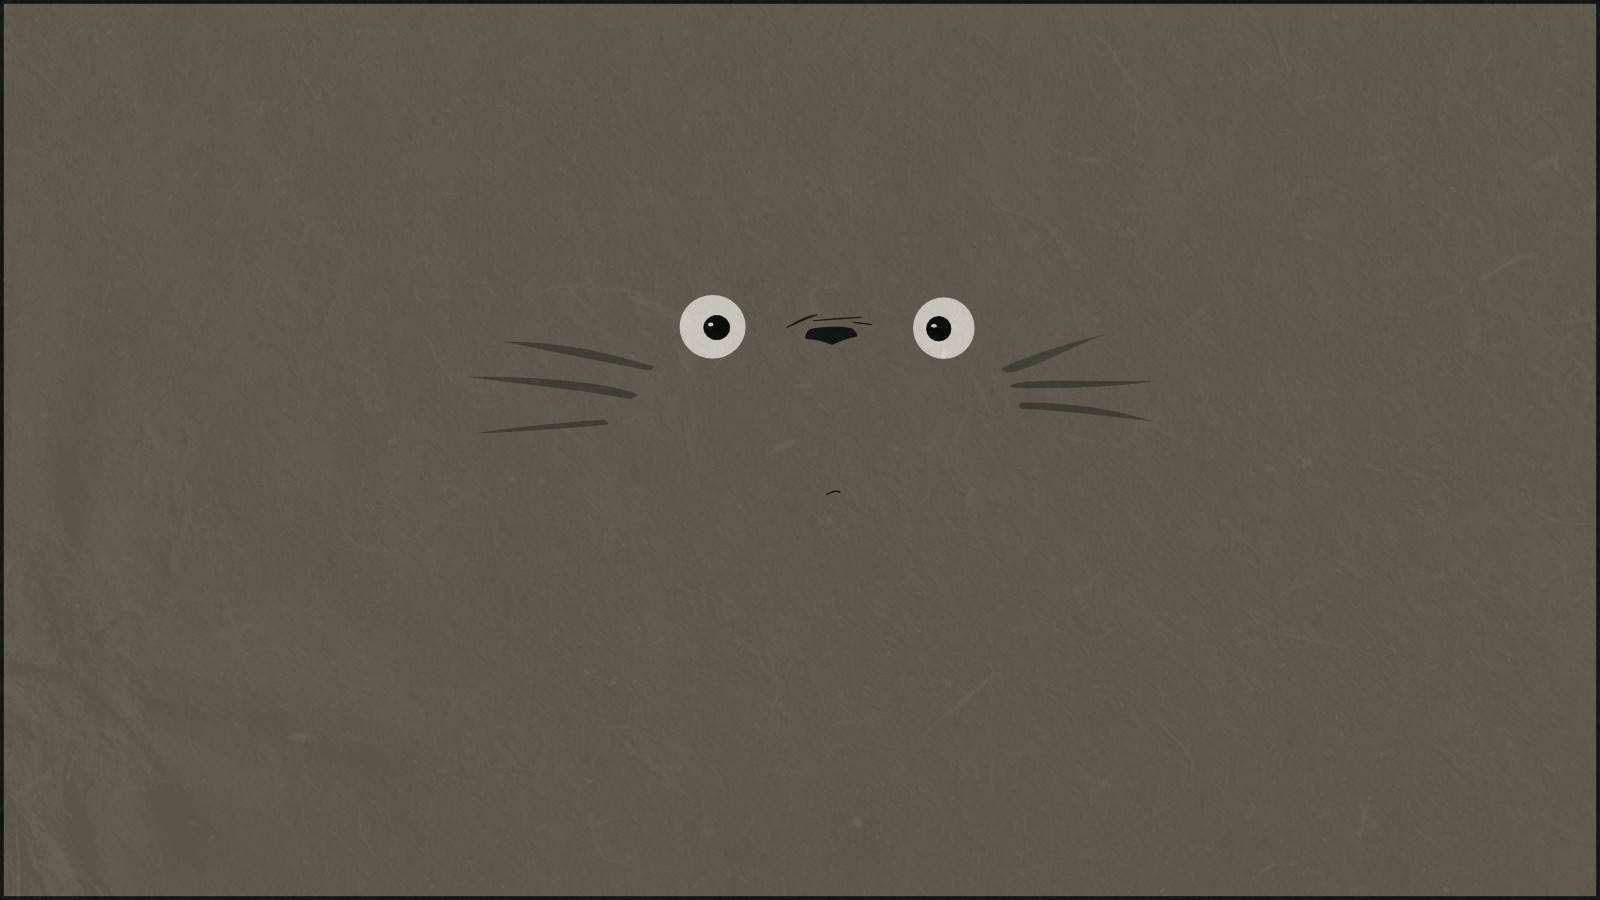 Totoro Minimalist Ipad Wallpaper